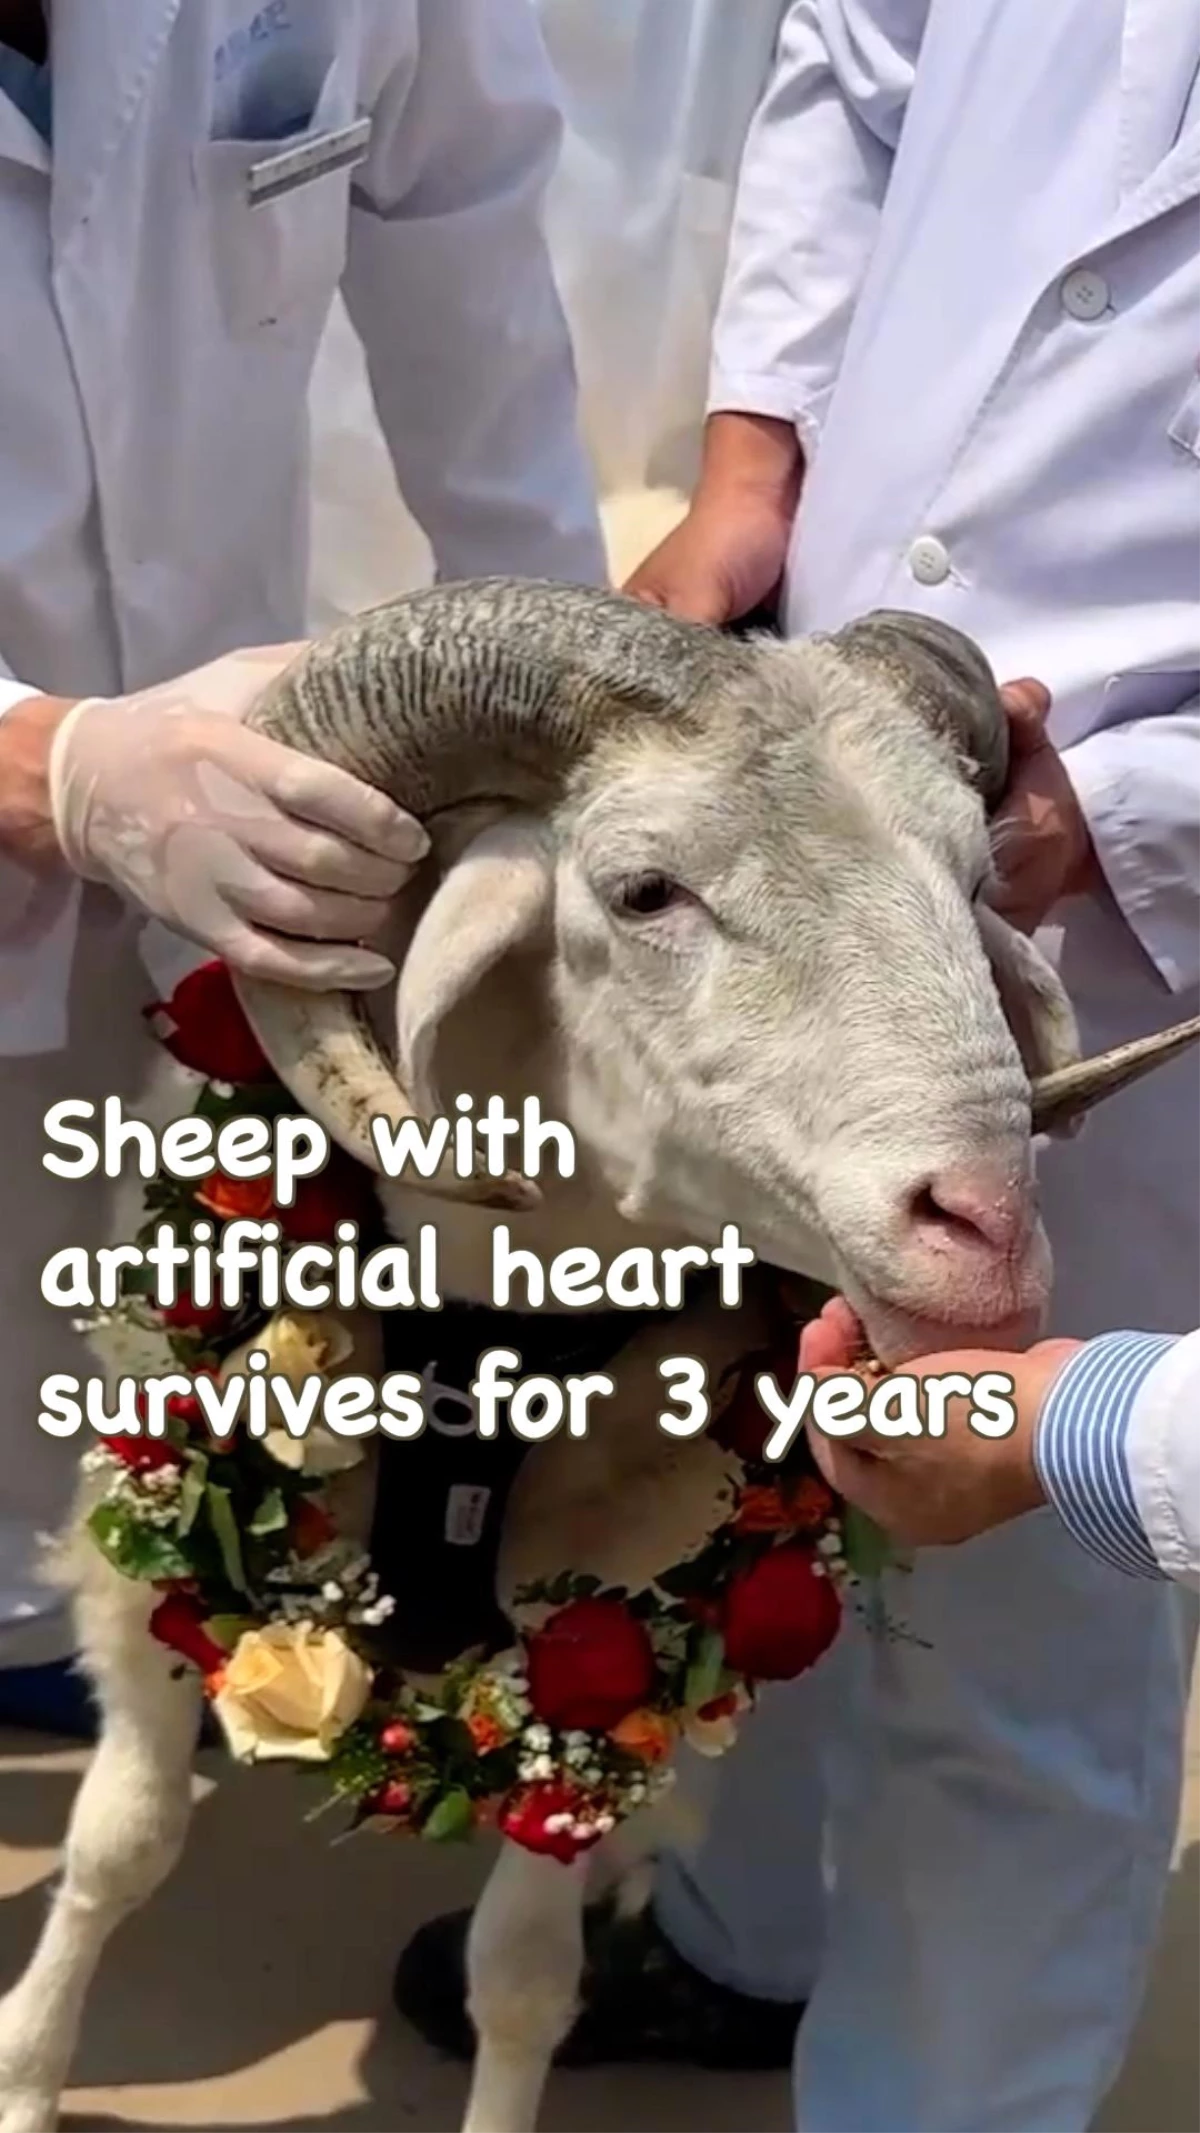 Yapay kalp takılan koyunun çeşitli görüntüleri